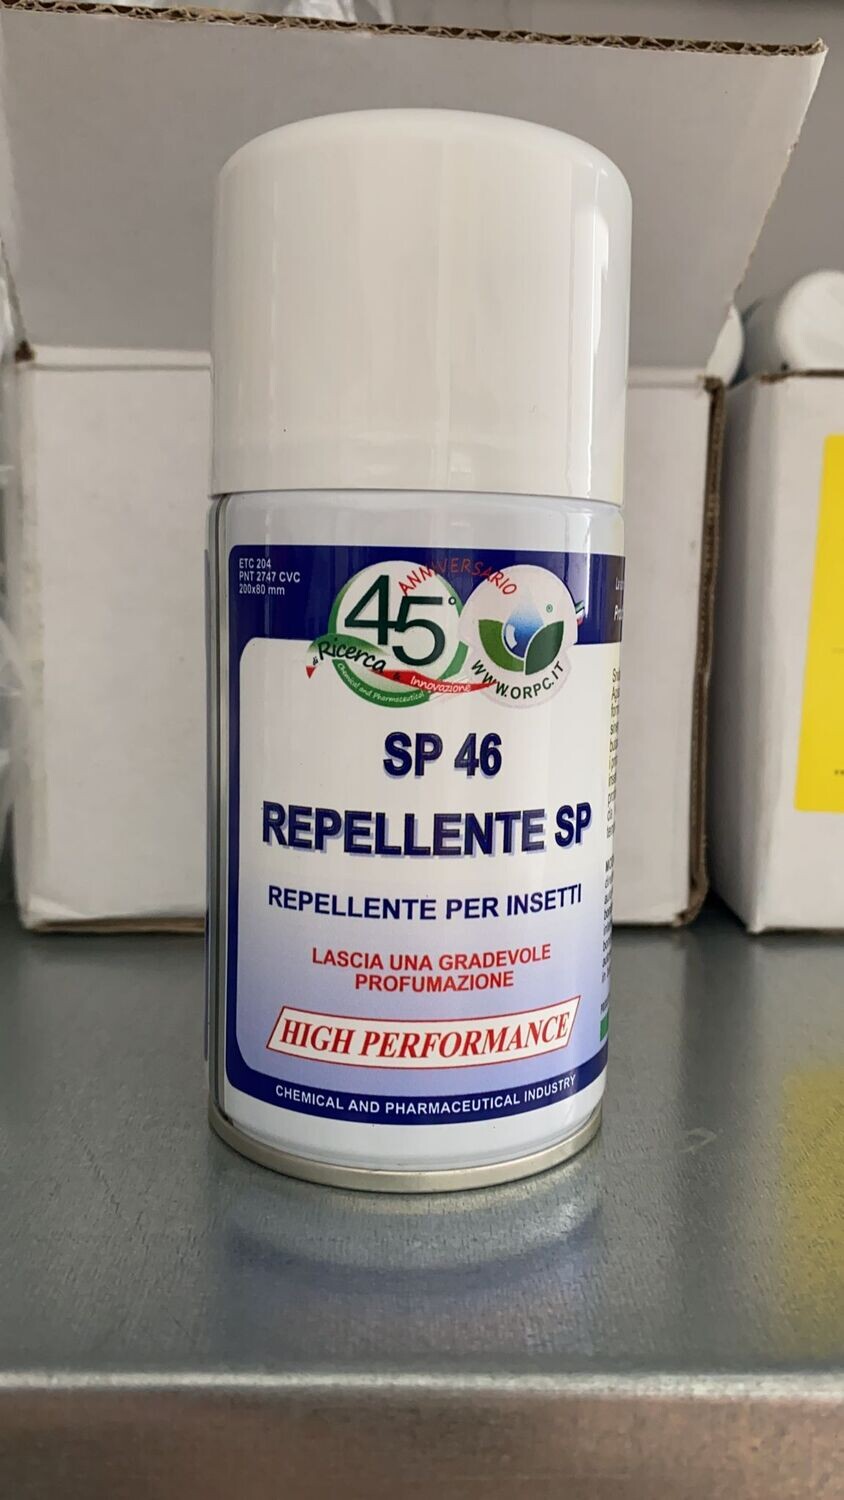 SP 46 repellente per insetti | Faster Disinfestazioni